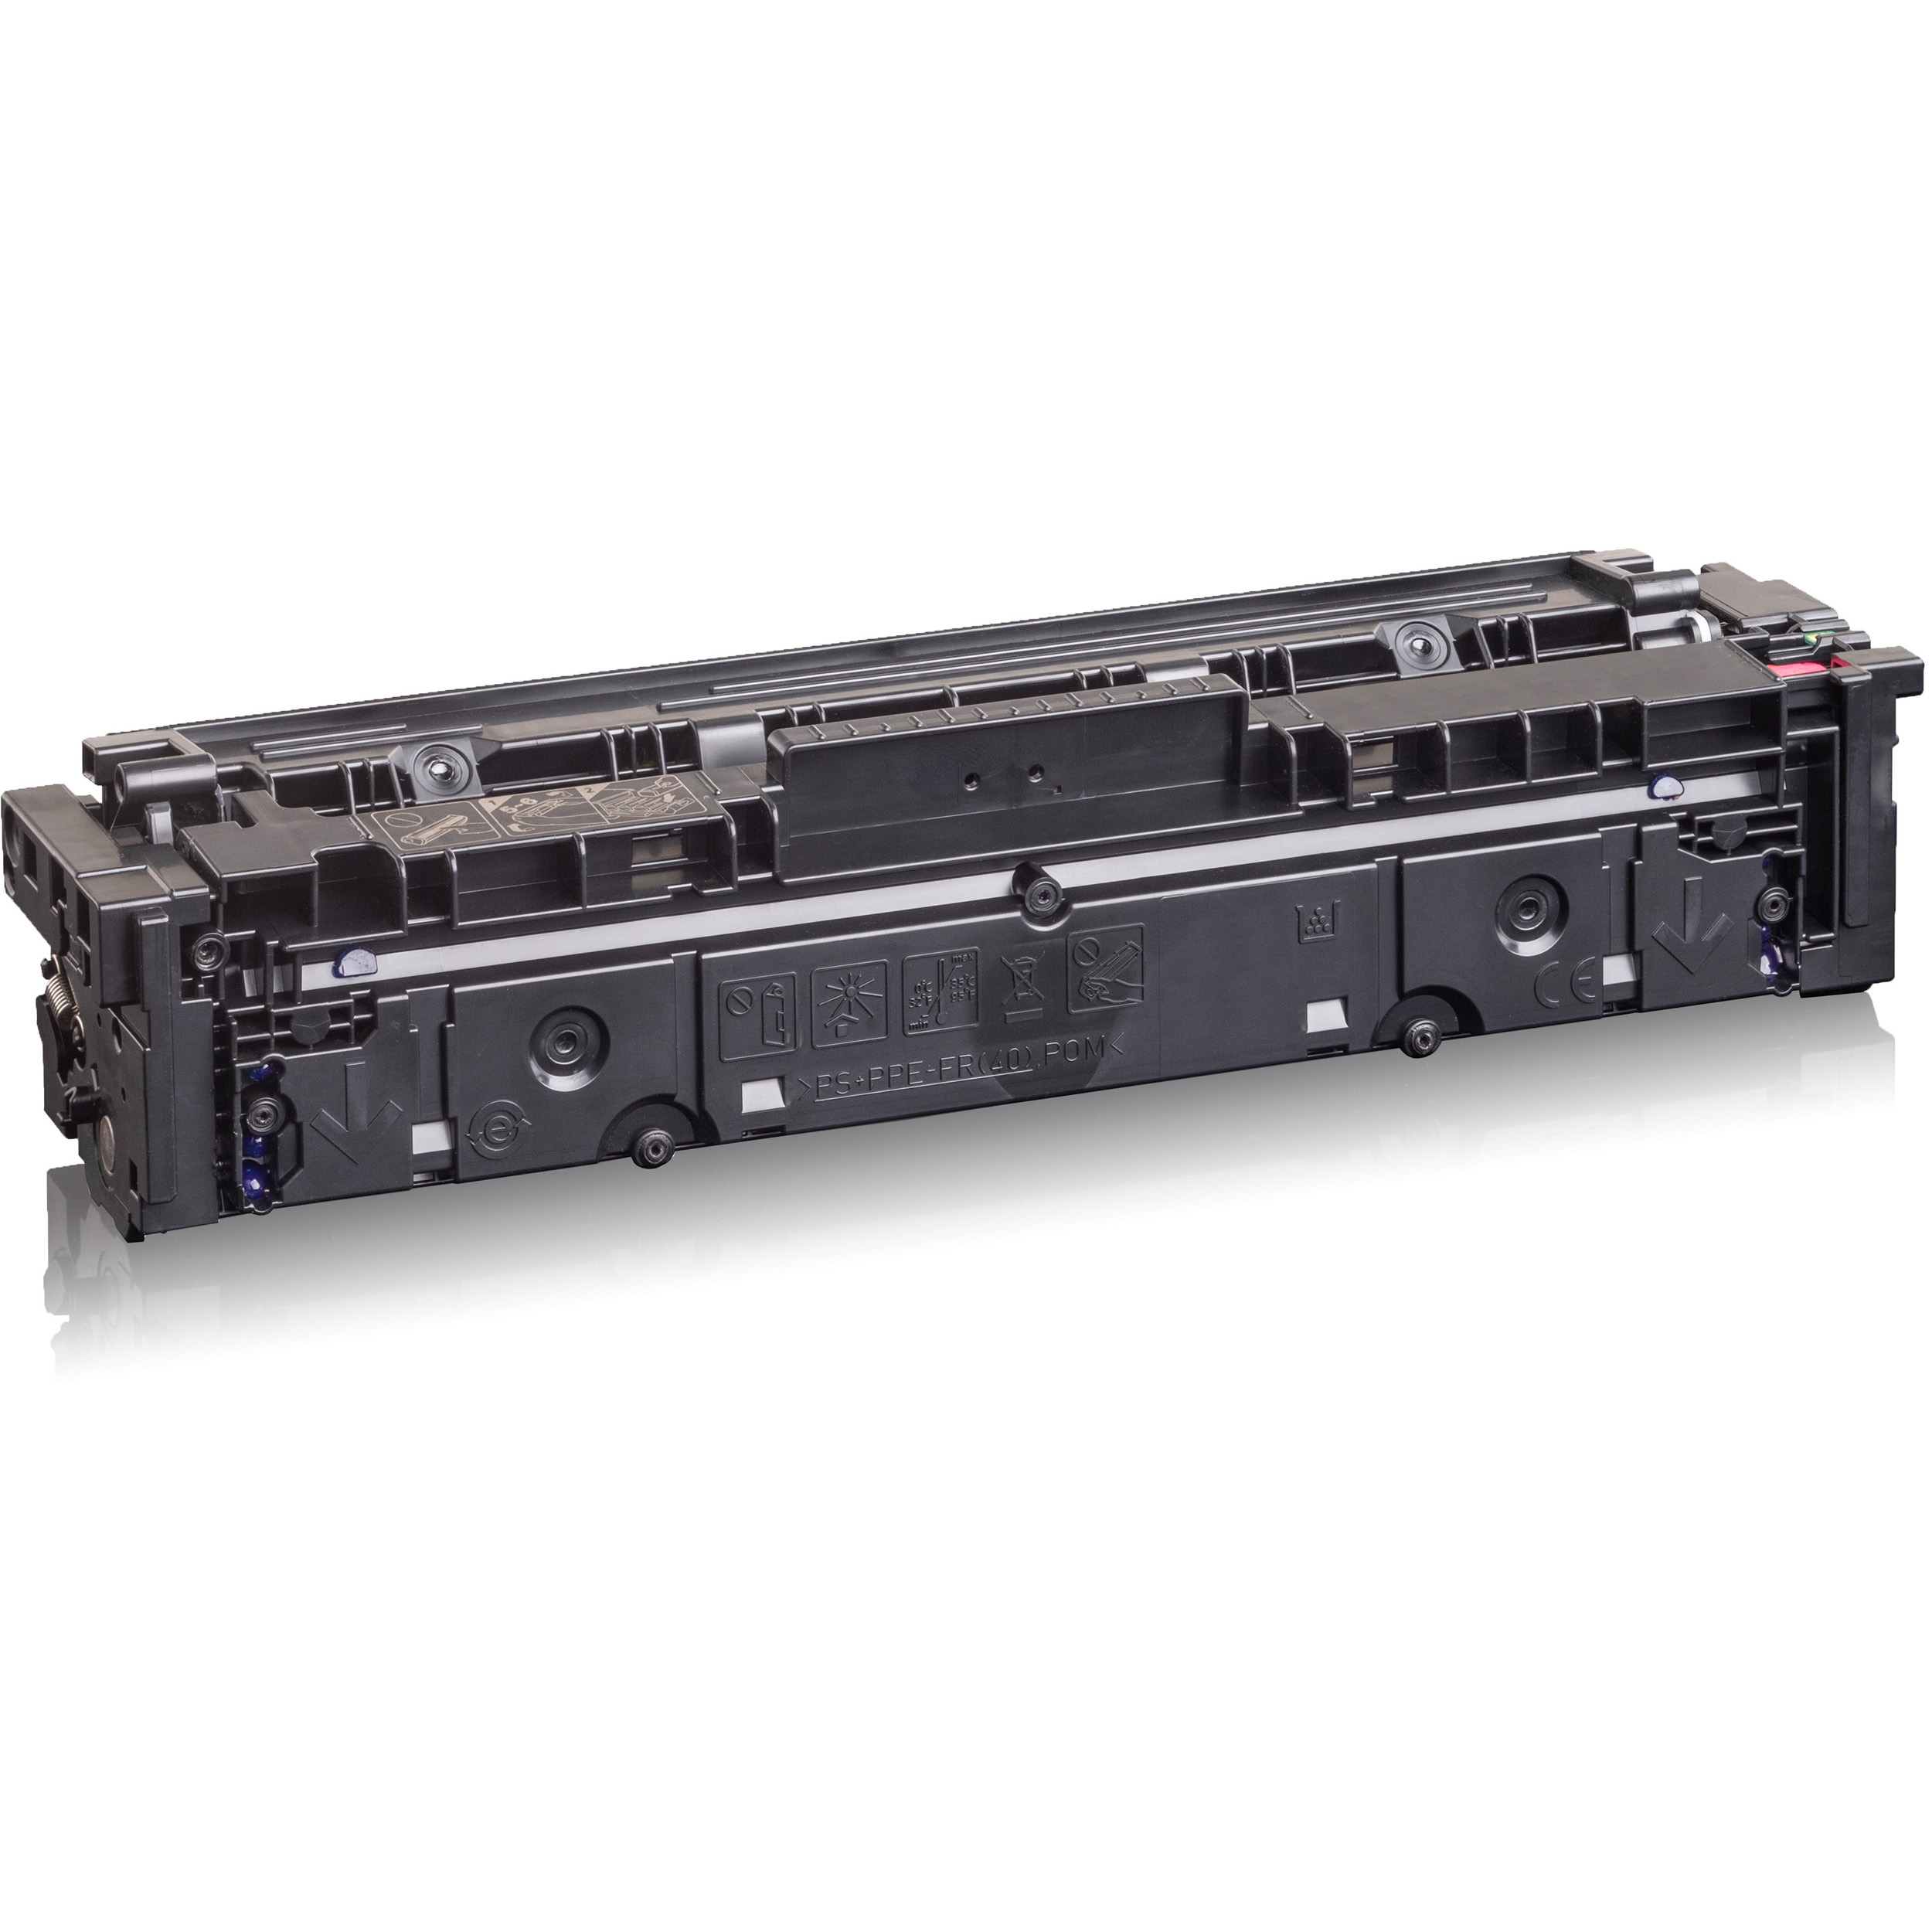 KMP Toner für HP 203A Toner magenta Magenta (CF543A) (3022C002)